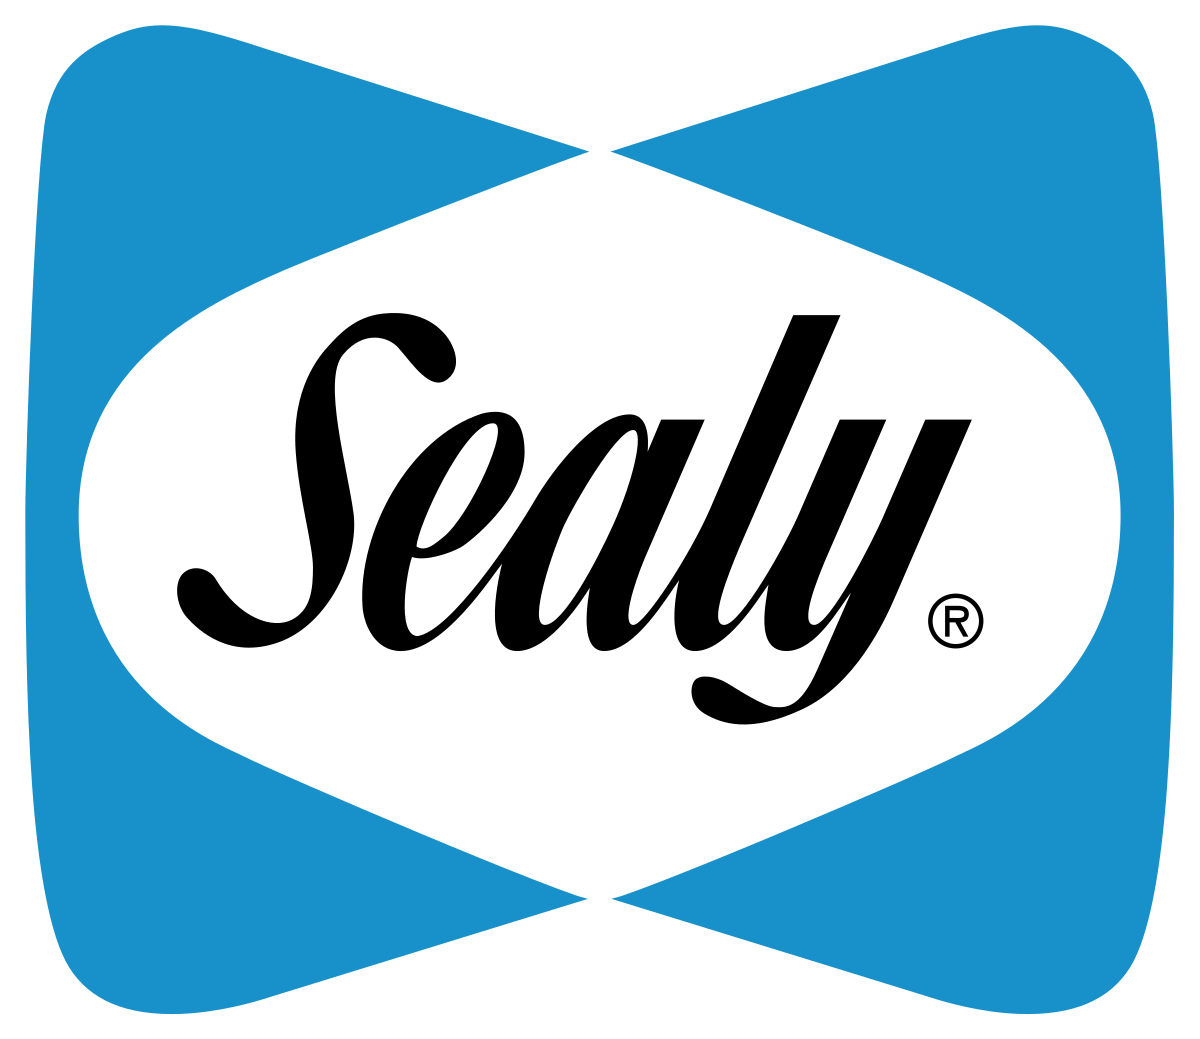 Sealy Corporation logo.svg